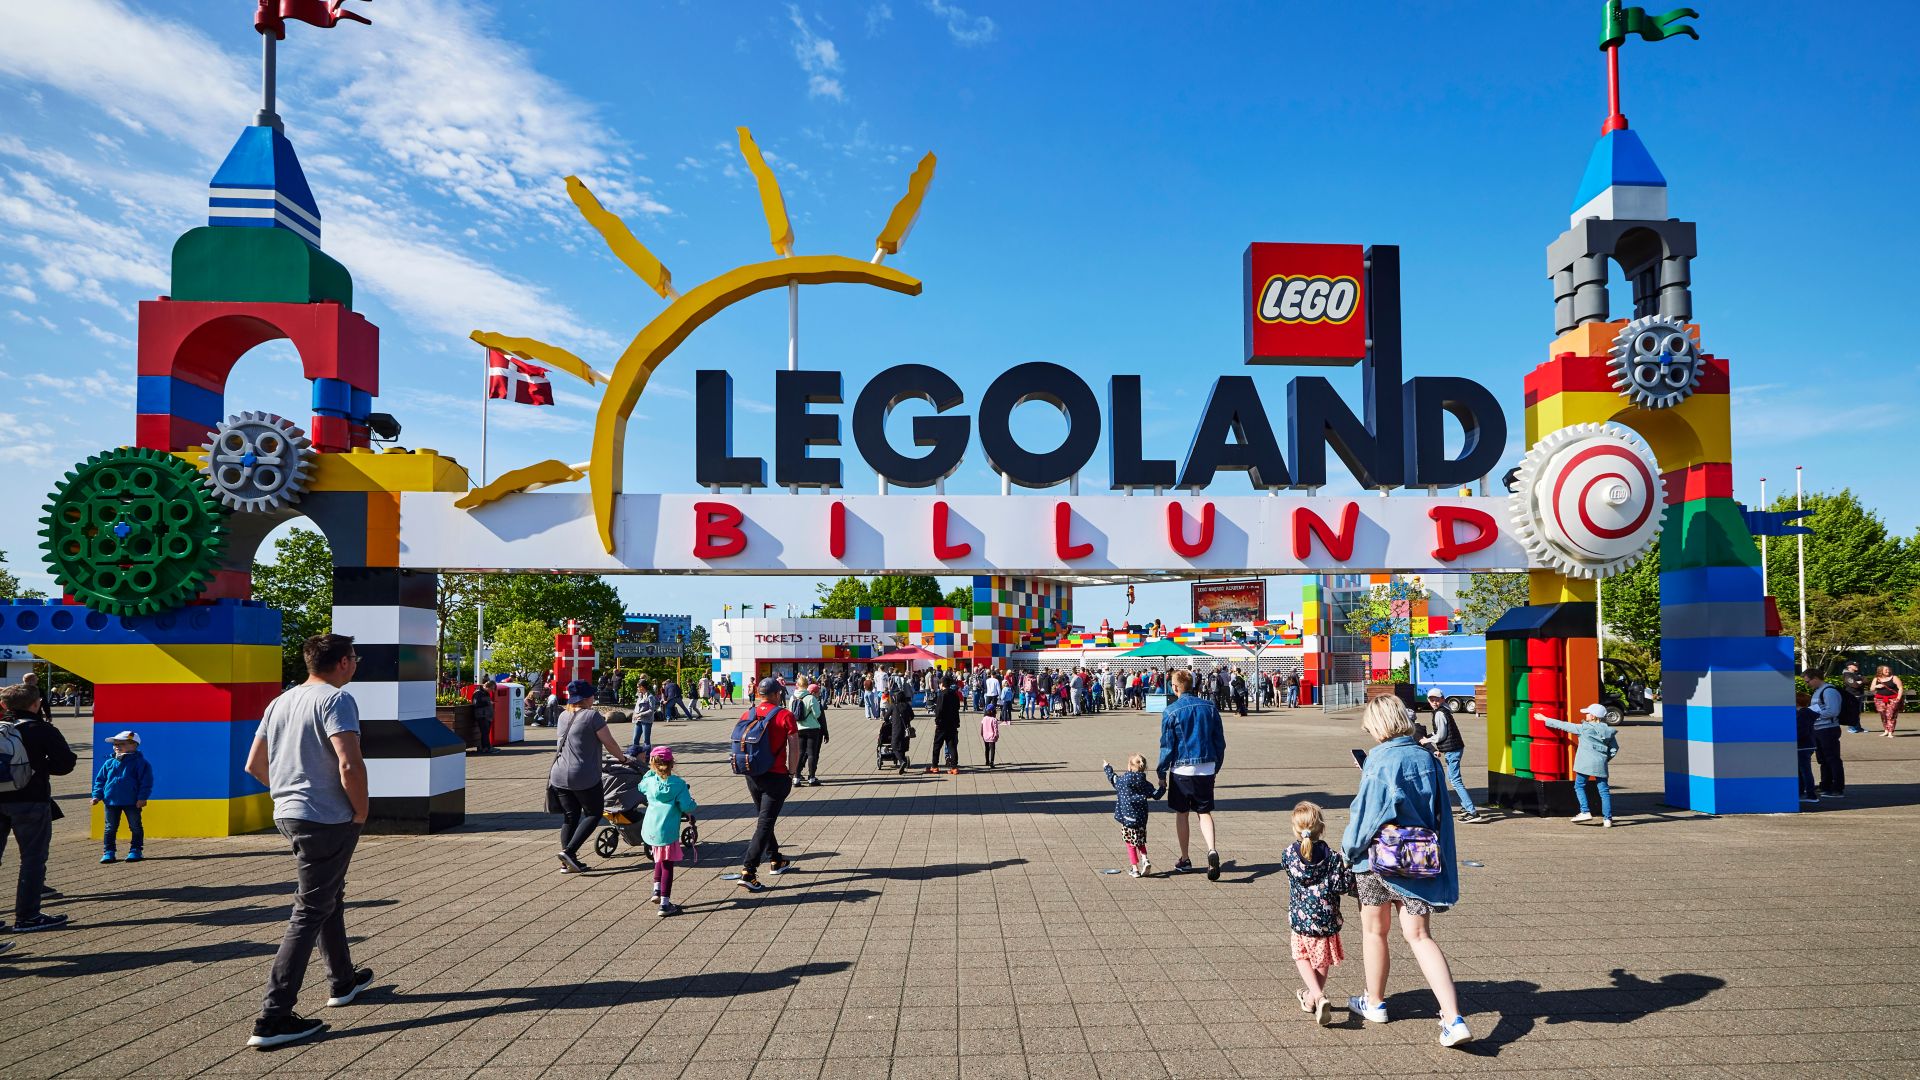 Legoland Billund entrance on a summer day